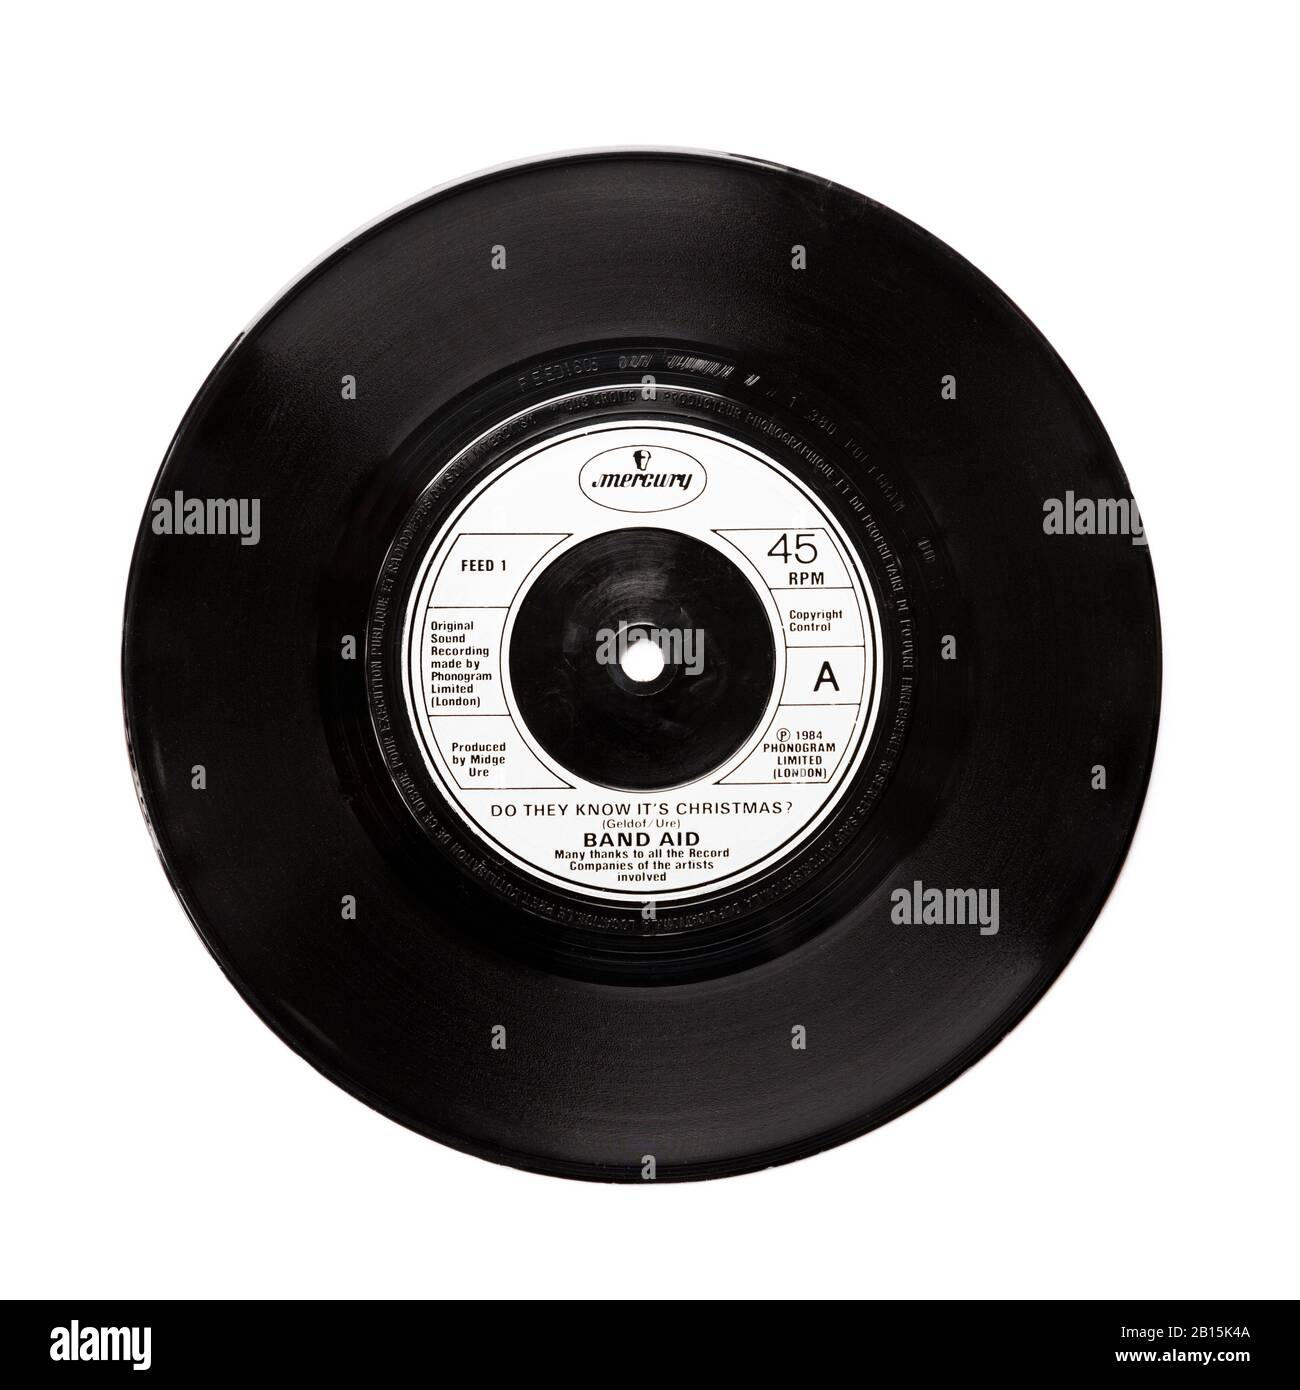 Old Original Phonogram Ltd Vinyl 45 RPM Schallplatte Do They Know It's Christmas by Band Aid 1984 isoliert auf weiß. Geldof und Ure Stockfoto